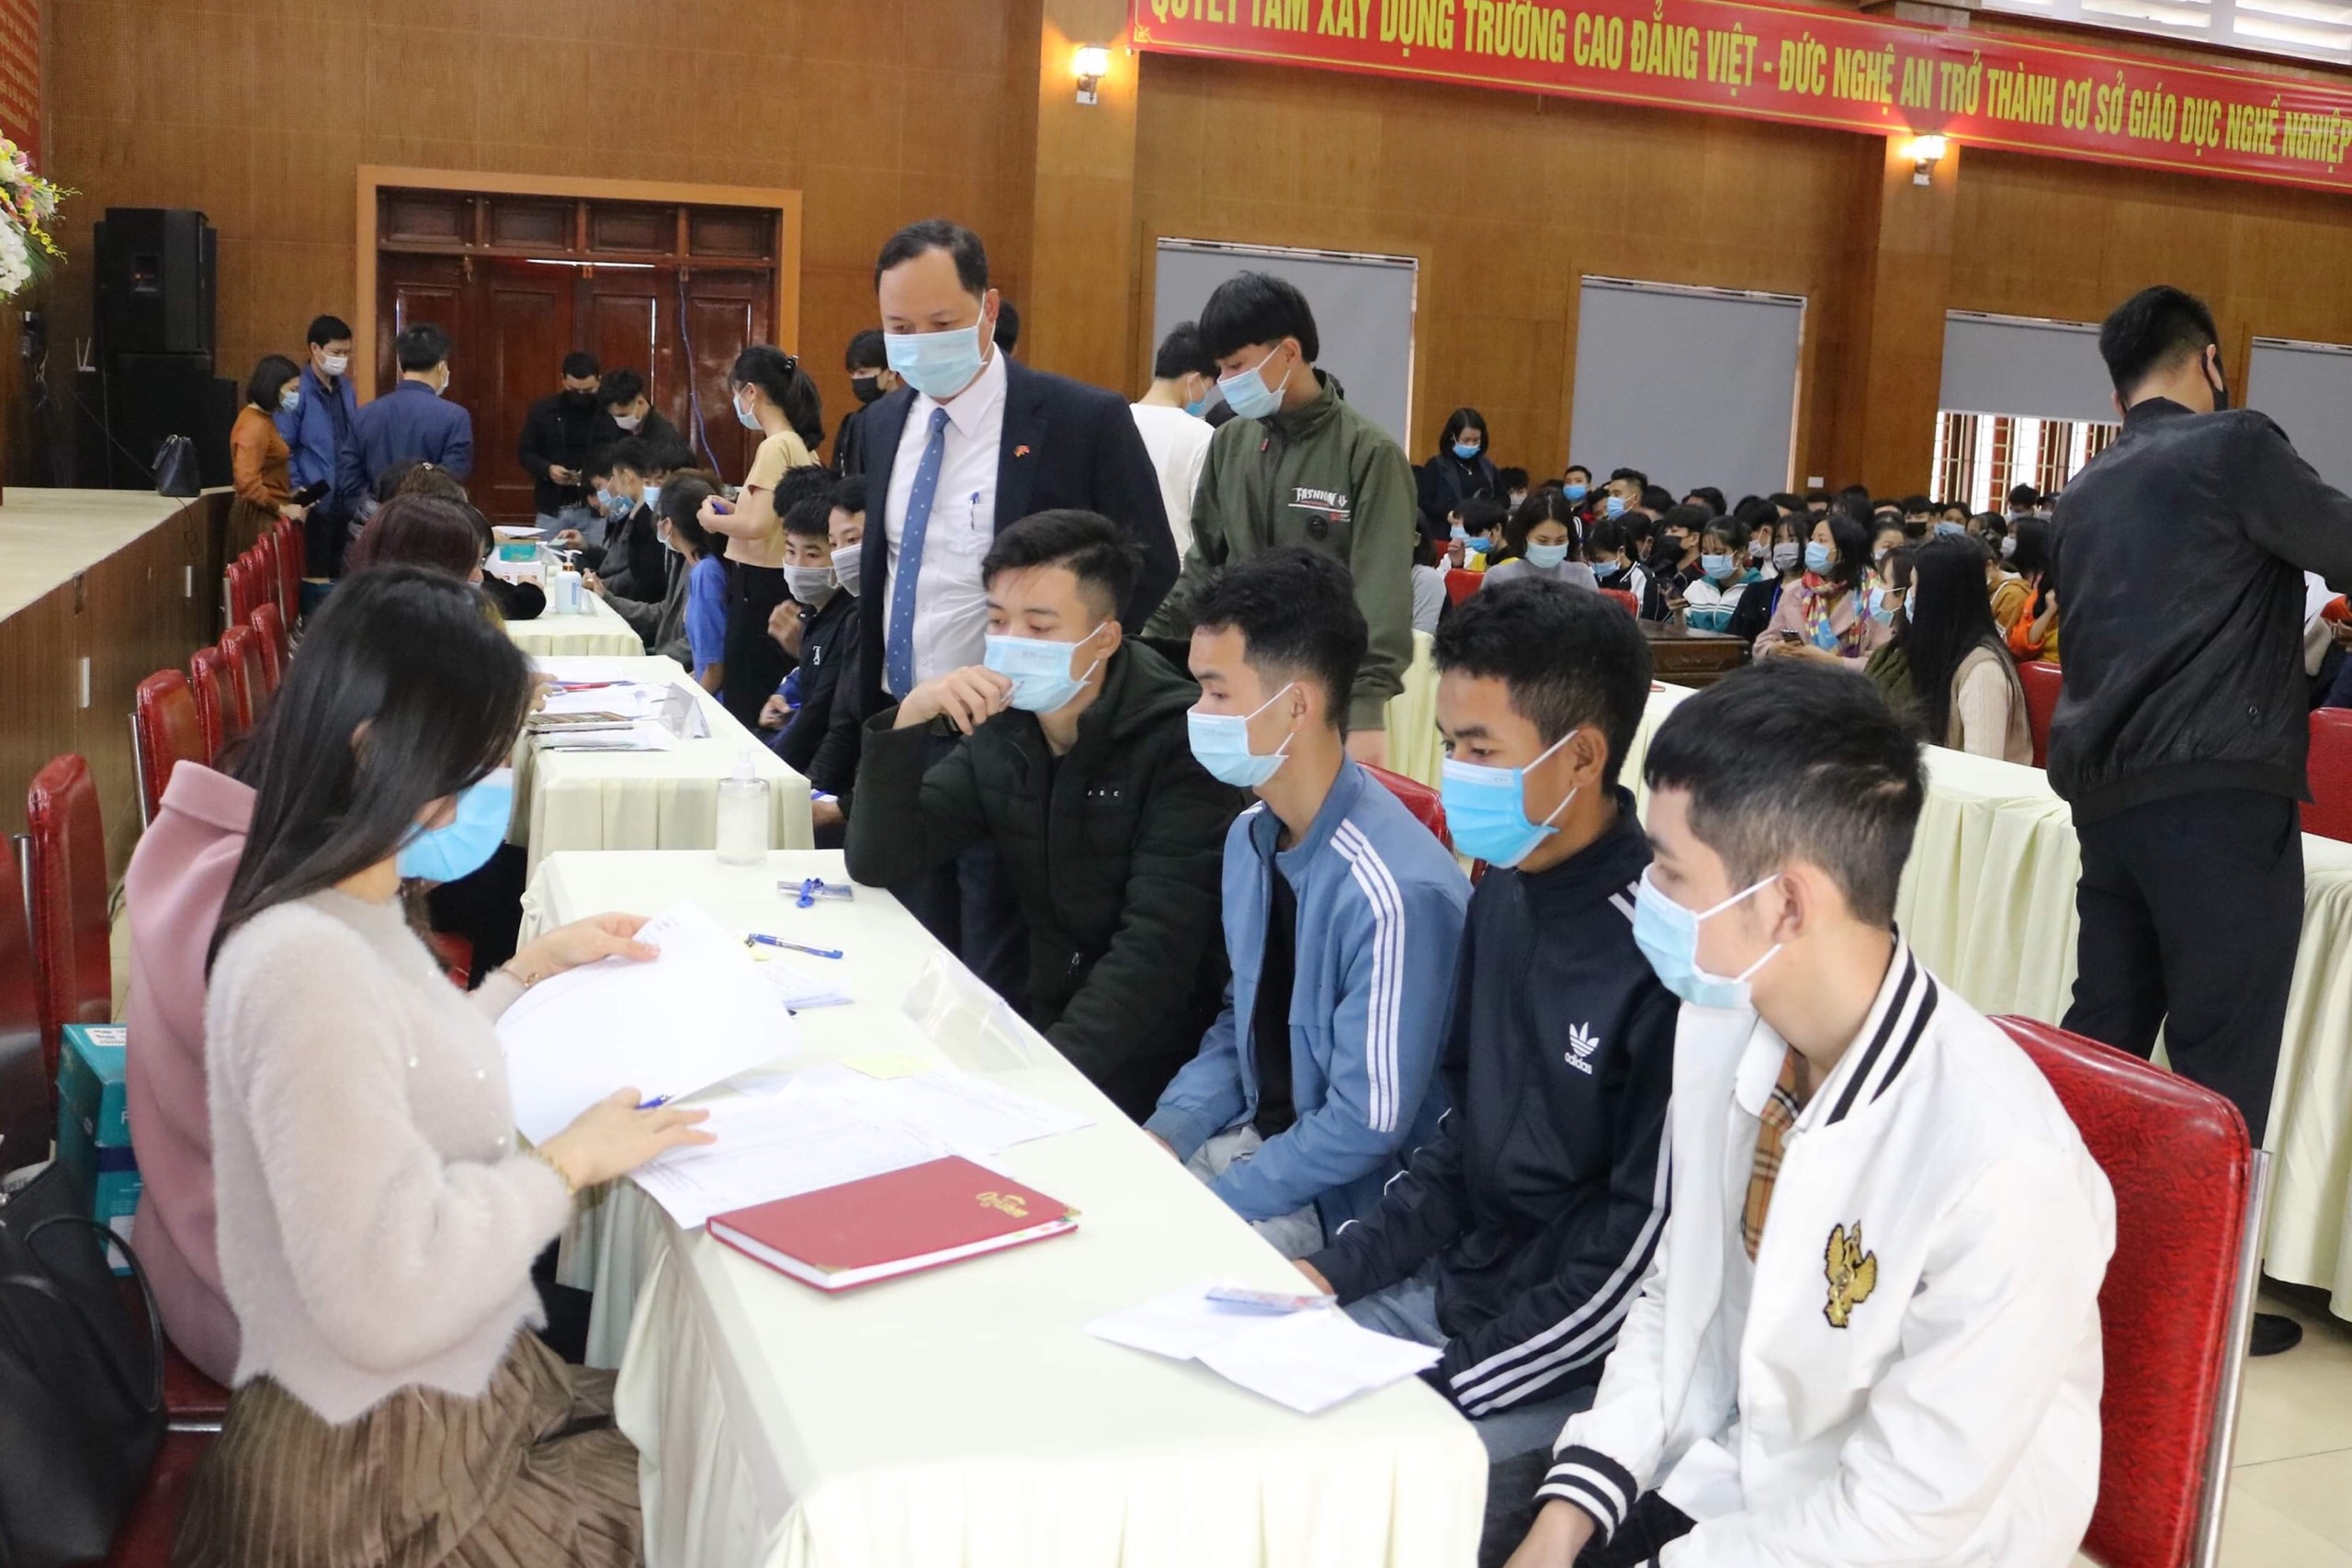 Trường Cao đẳng Việt – Đức Nghệ An tổ chức chi trả chế độ chính sách nội trú cho học sinh, sinh viên học kỳ 1 – năm học 2020 - 2021